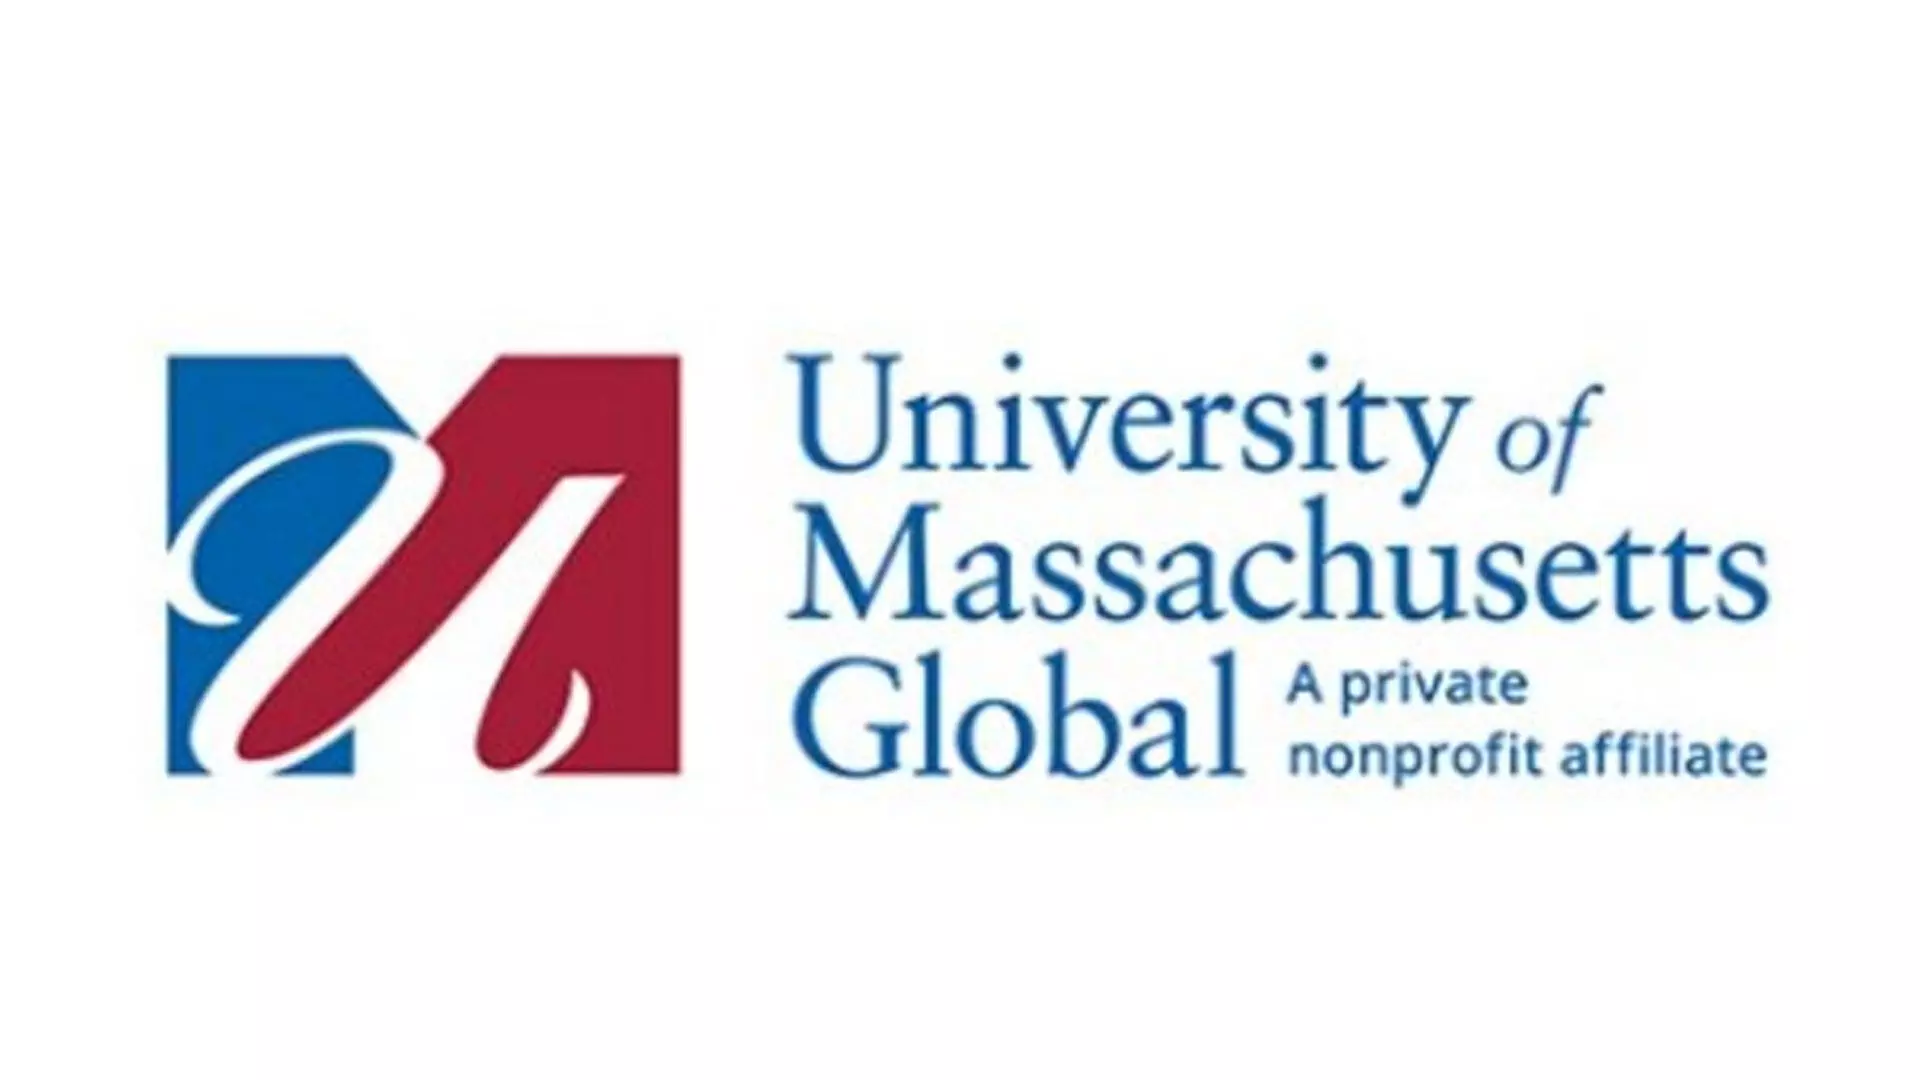 यूनिवर्सिटी ऑफ मैसाचुसेट्स ग्लोबल ने ऑनलाइन एमबीए का अनावरण किया